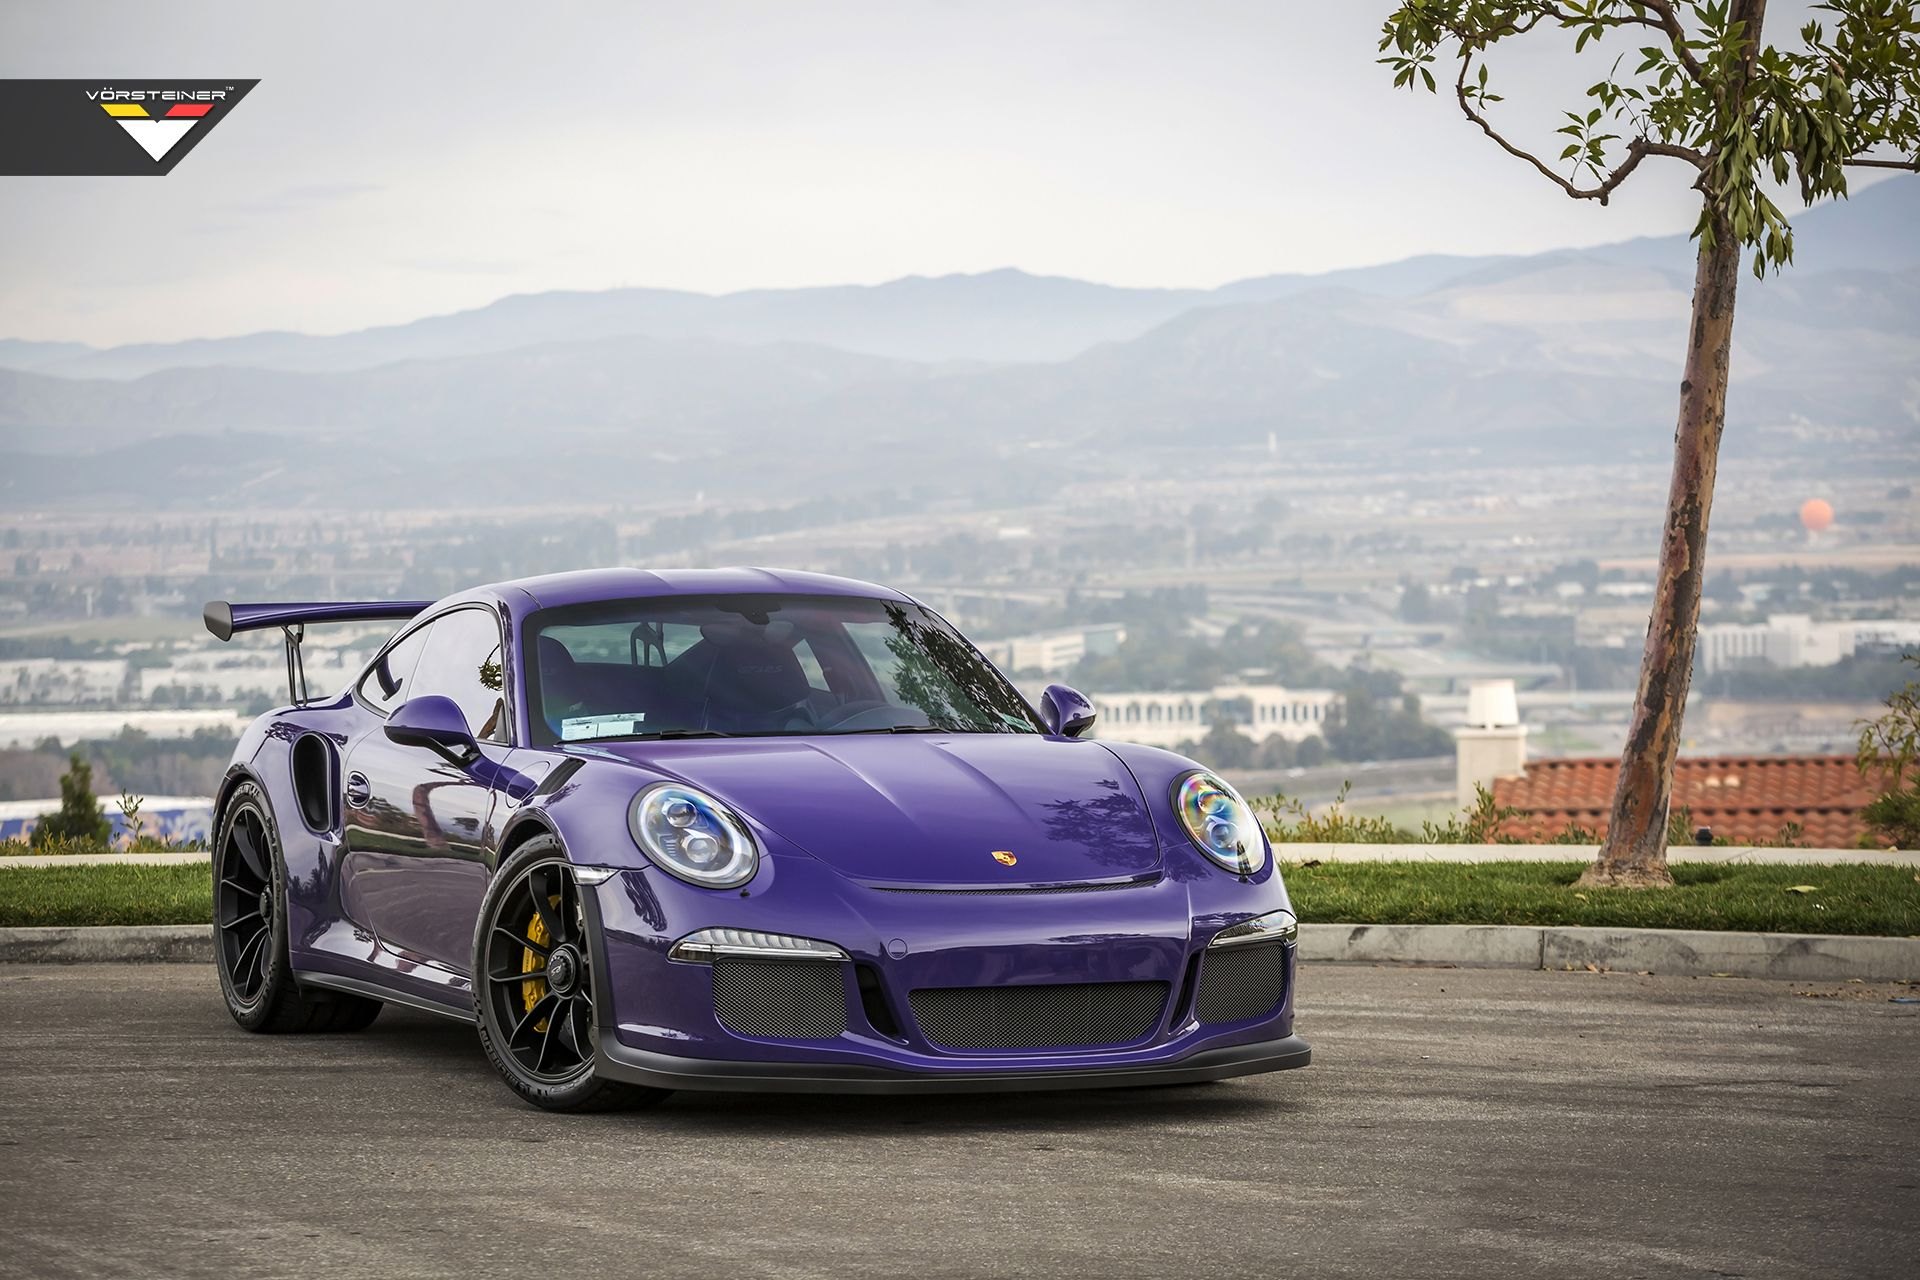 Chrome Bumper Grille on Purple Porsche 911 - Photo by Vorstiner